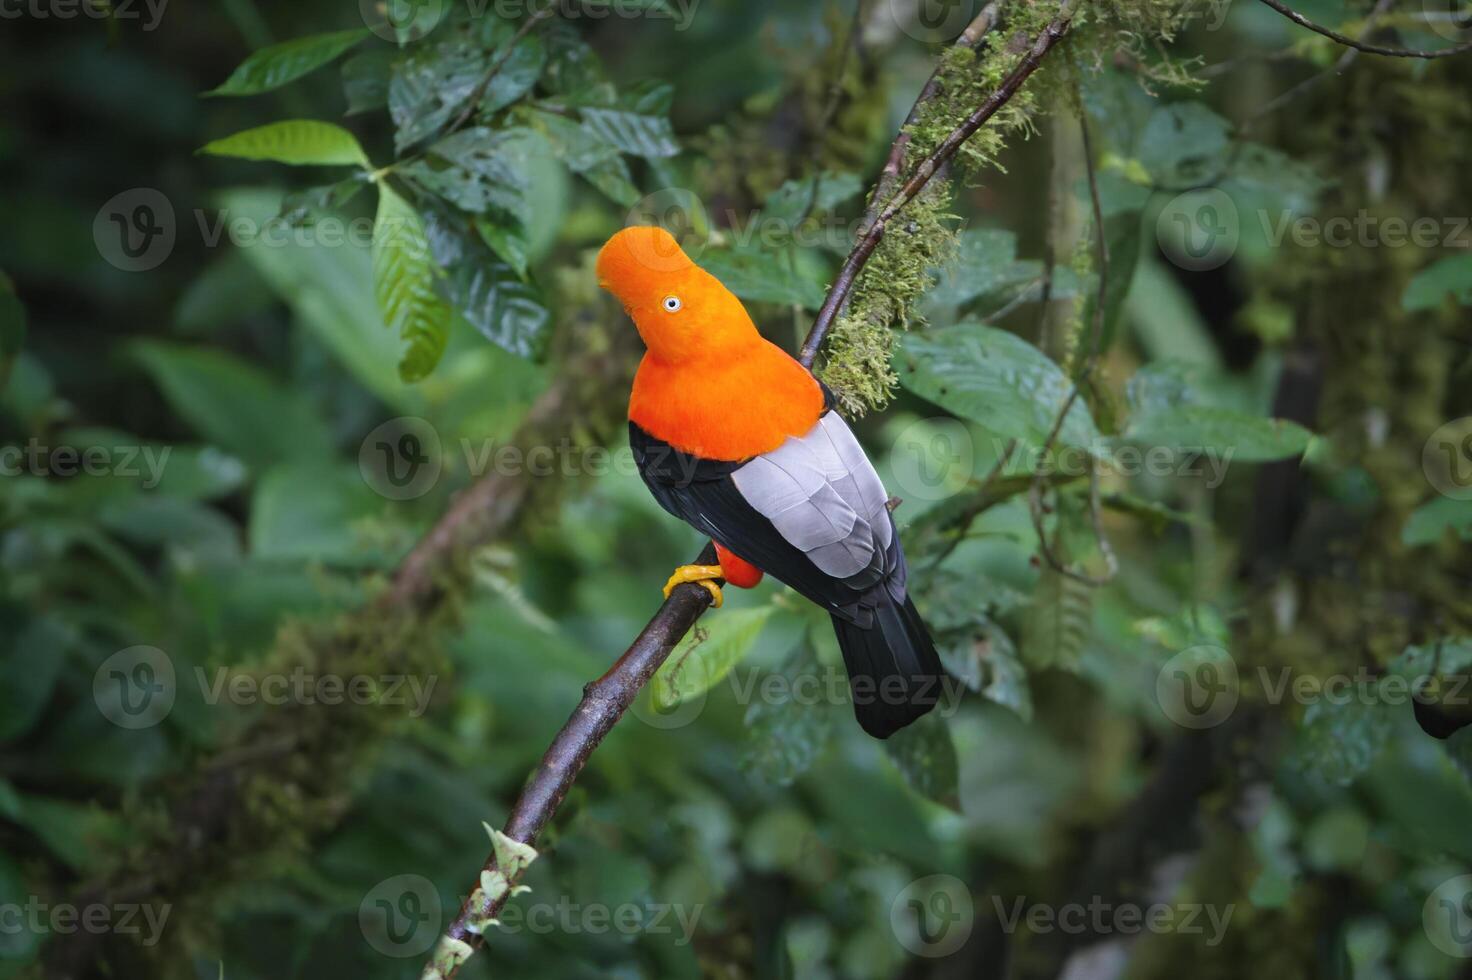 Masculin andine coq de le osciller, rupicole péruvienne, dans le manu nationale parc nuage forêt, péruvien nationale oiseau, Pérou, Sud Amérique photo